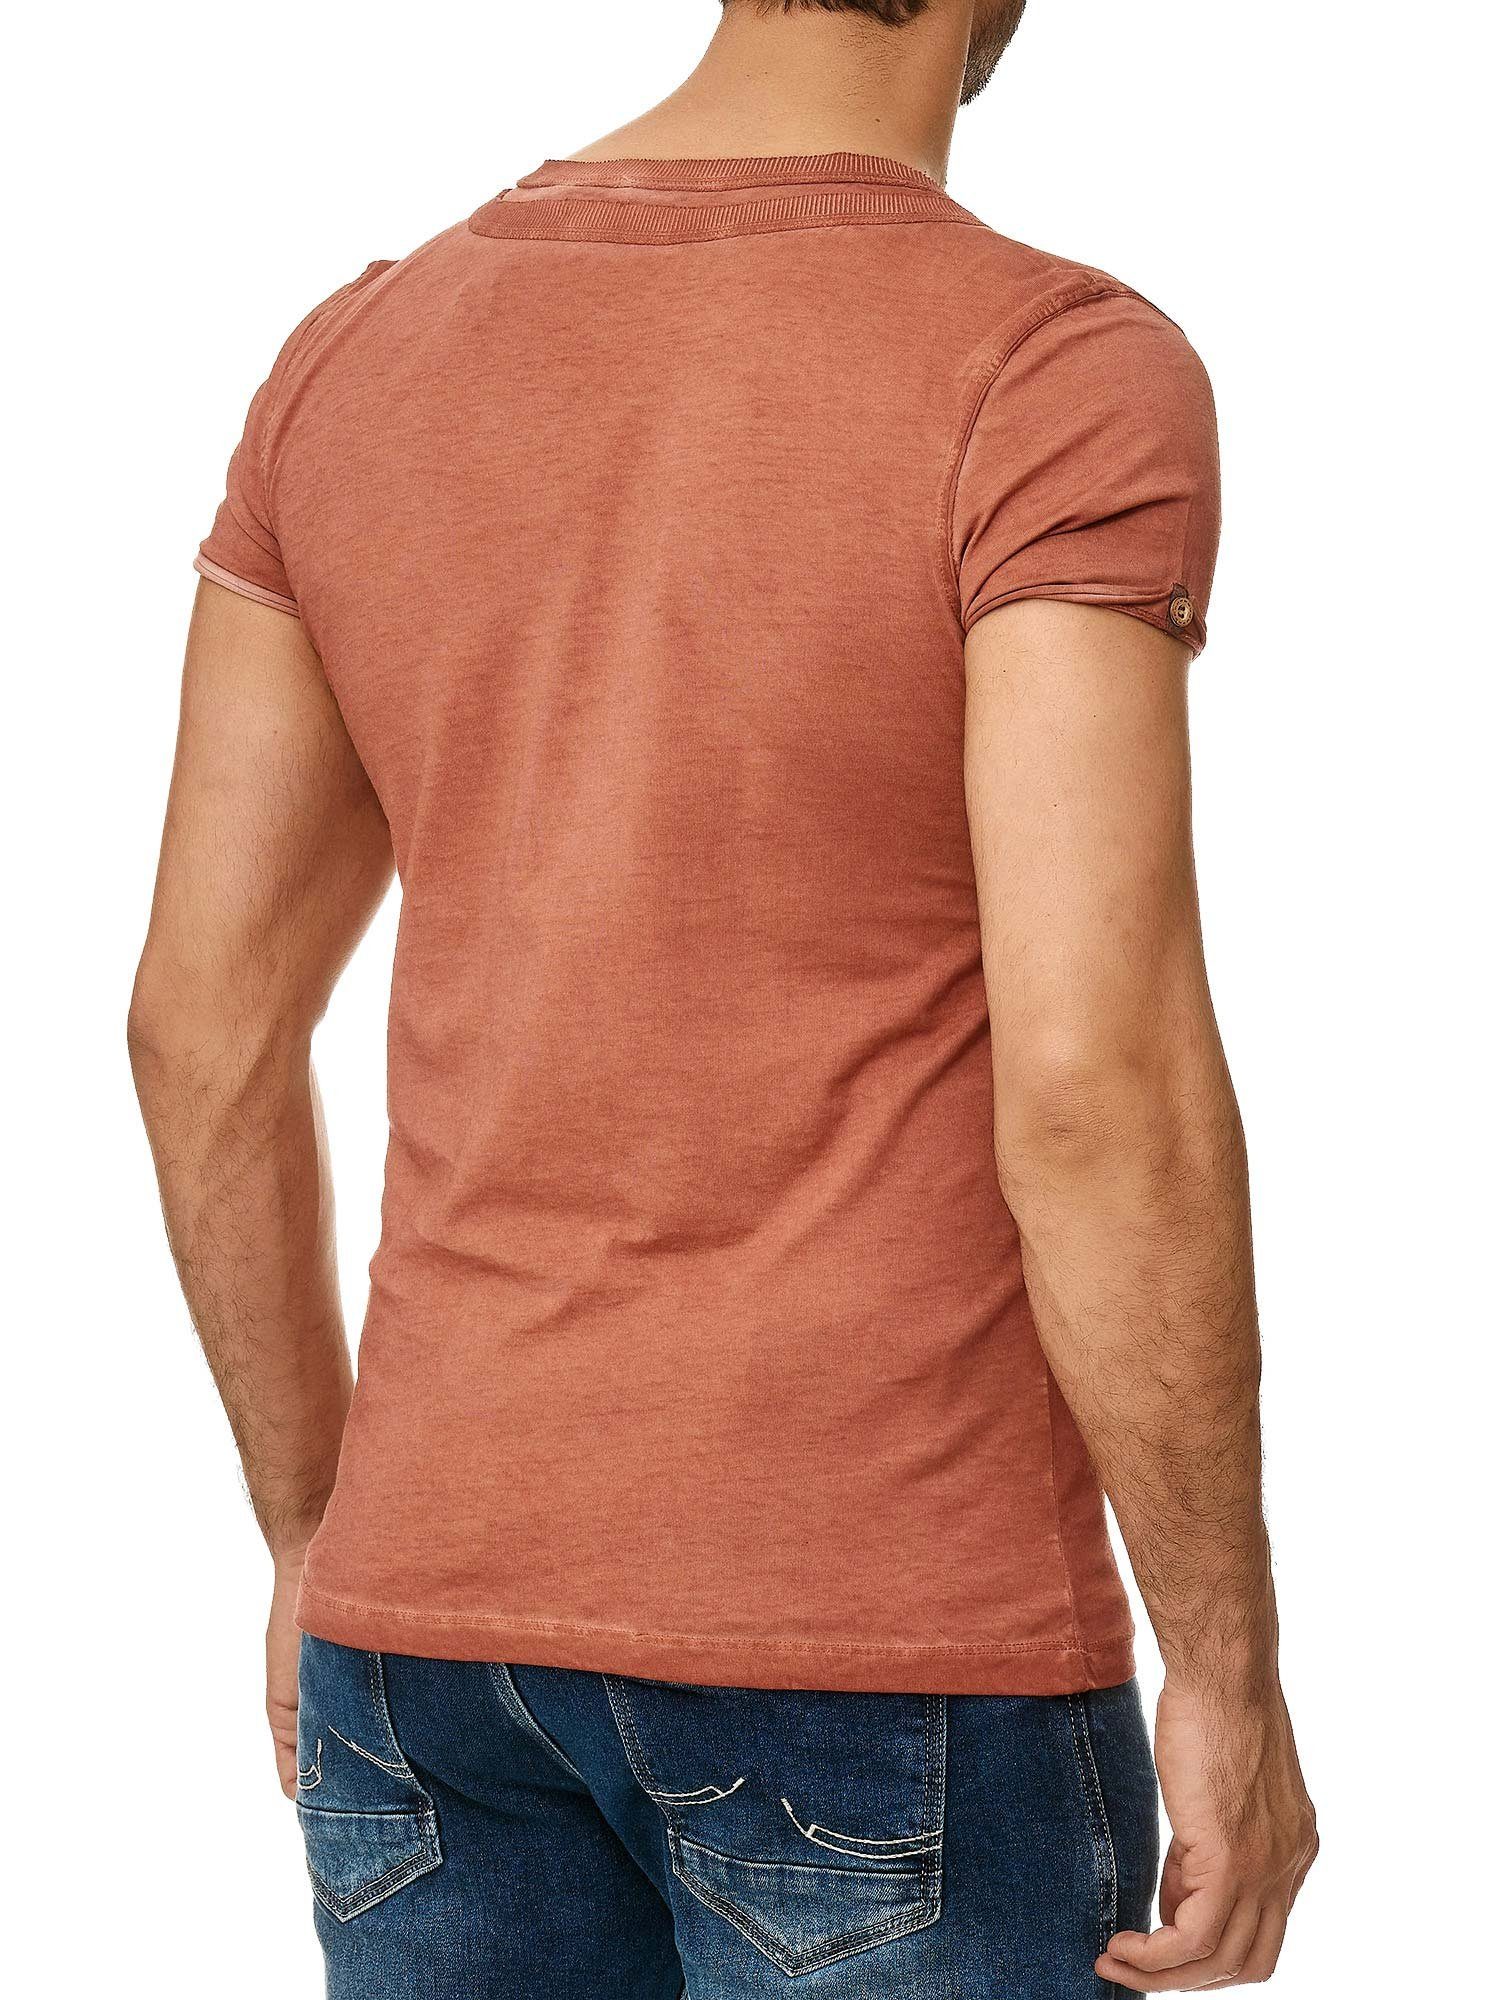 T-Shirt stylischem Knopfleiste mit der Ölwaschung 4022 Tazzio an und in bordeaux trendiger Kragen Schulter